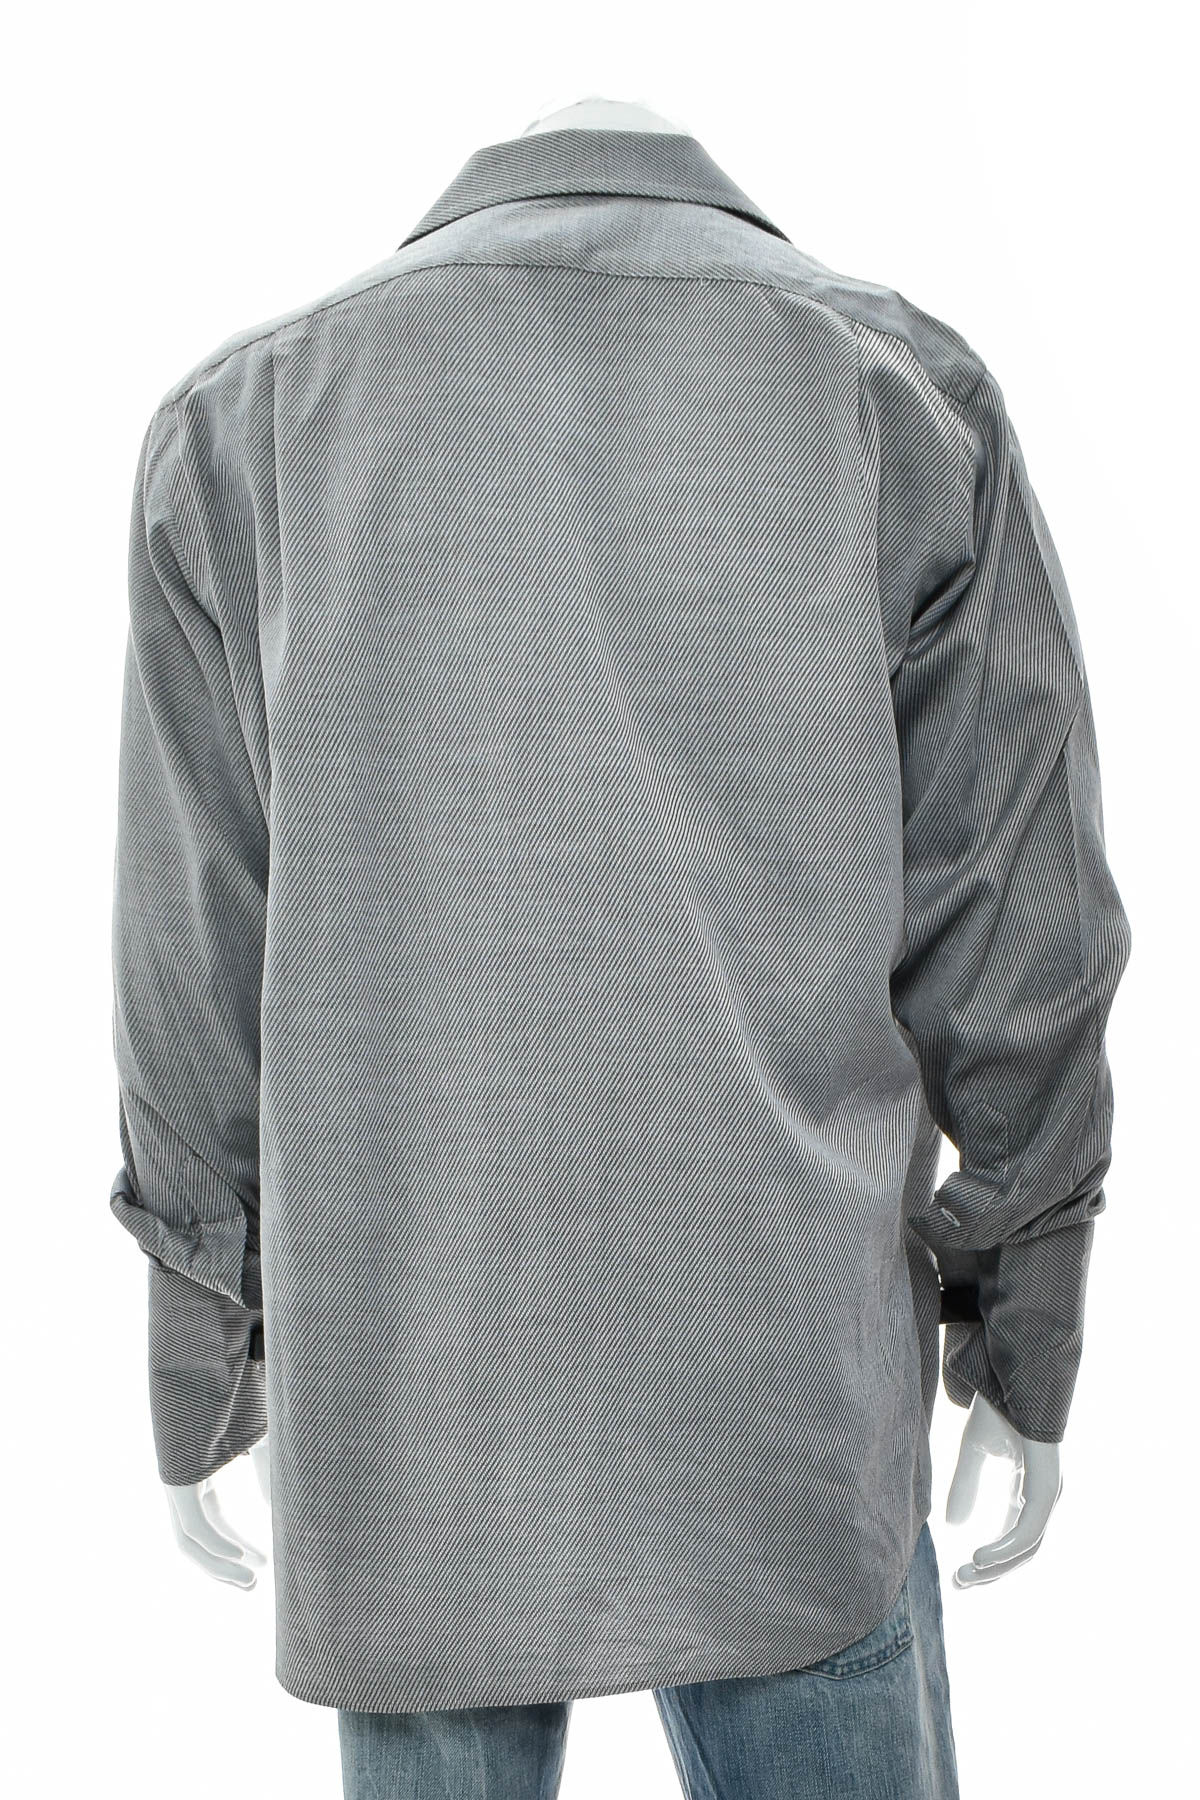 Ανδρικό πουκάμισο - Paul Fredrick - 1